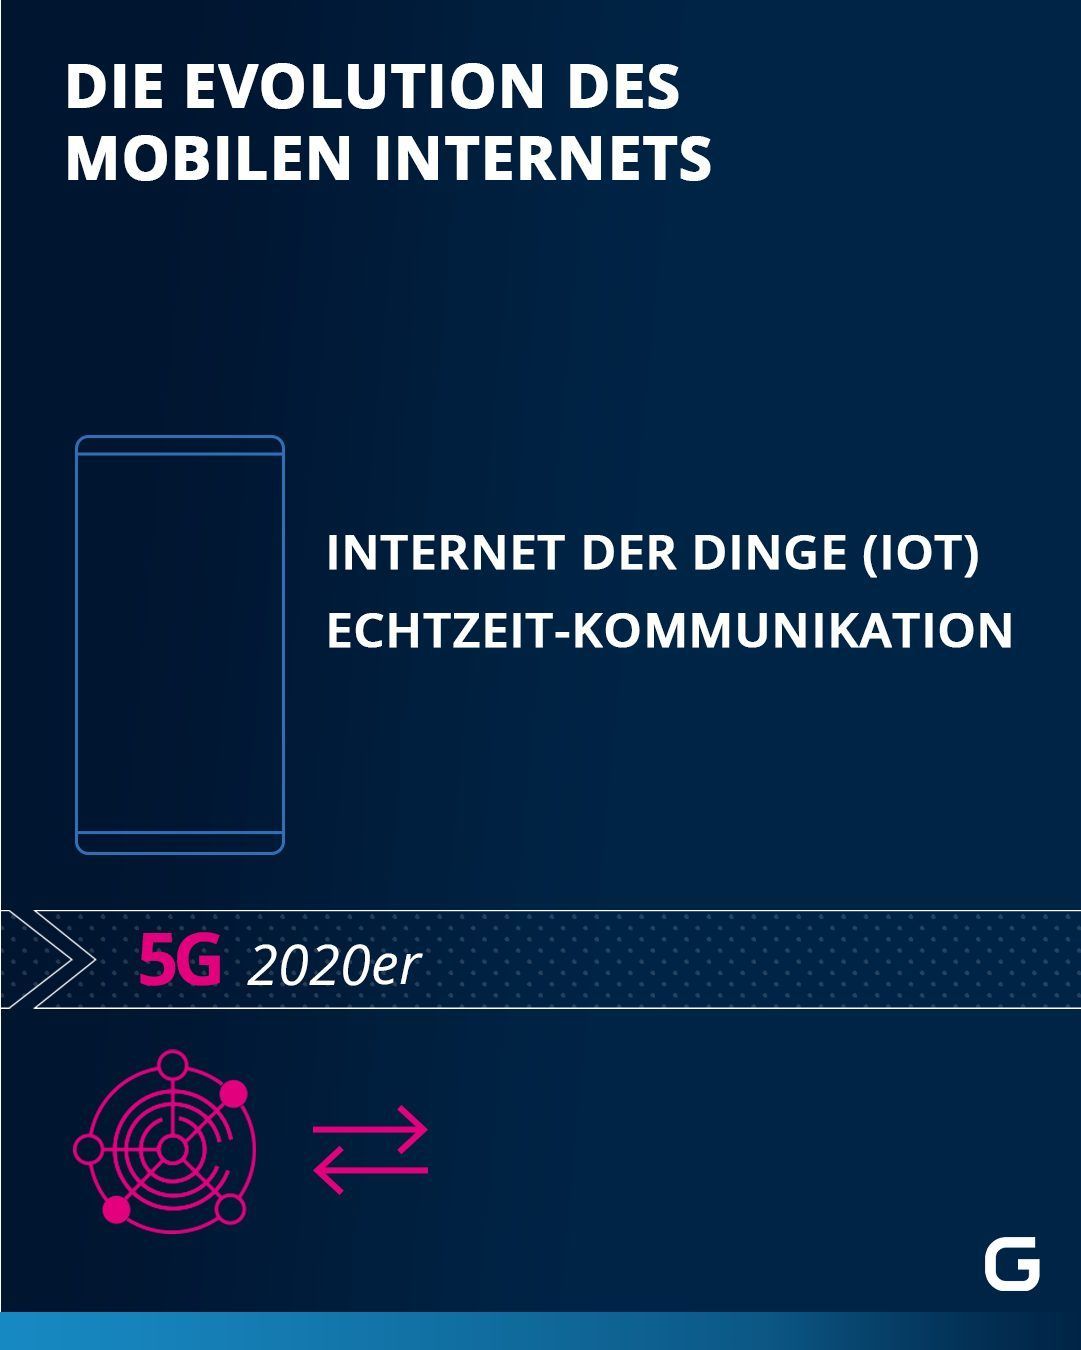 Evolution des Mobilen Internets: 5G